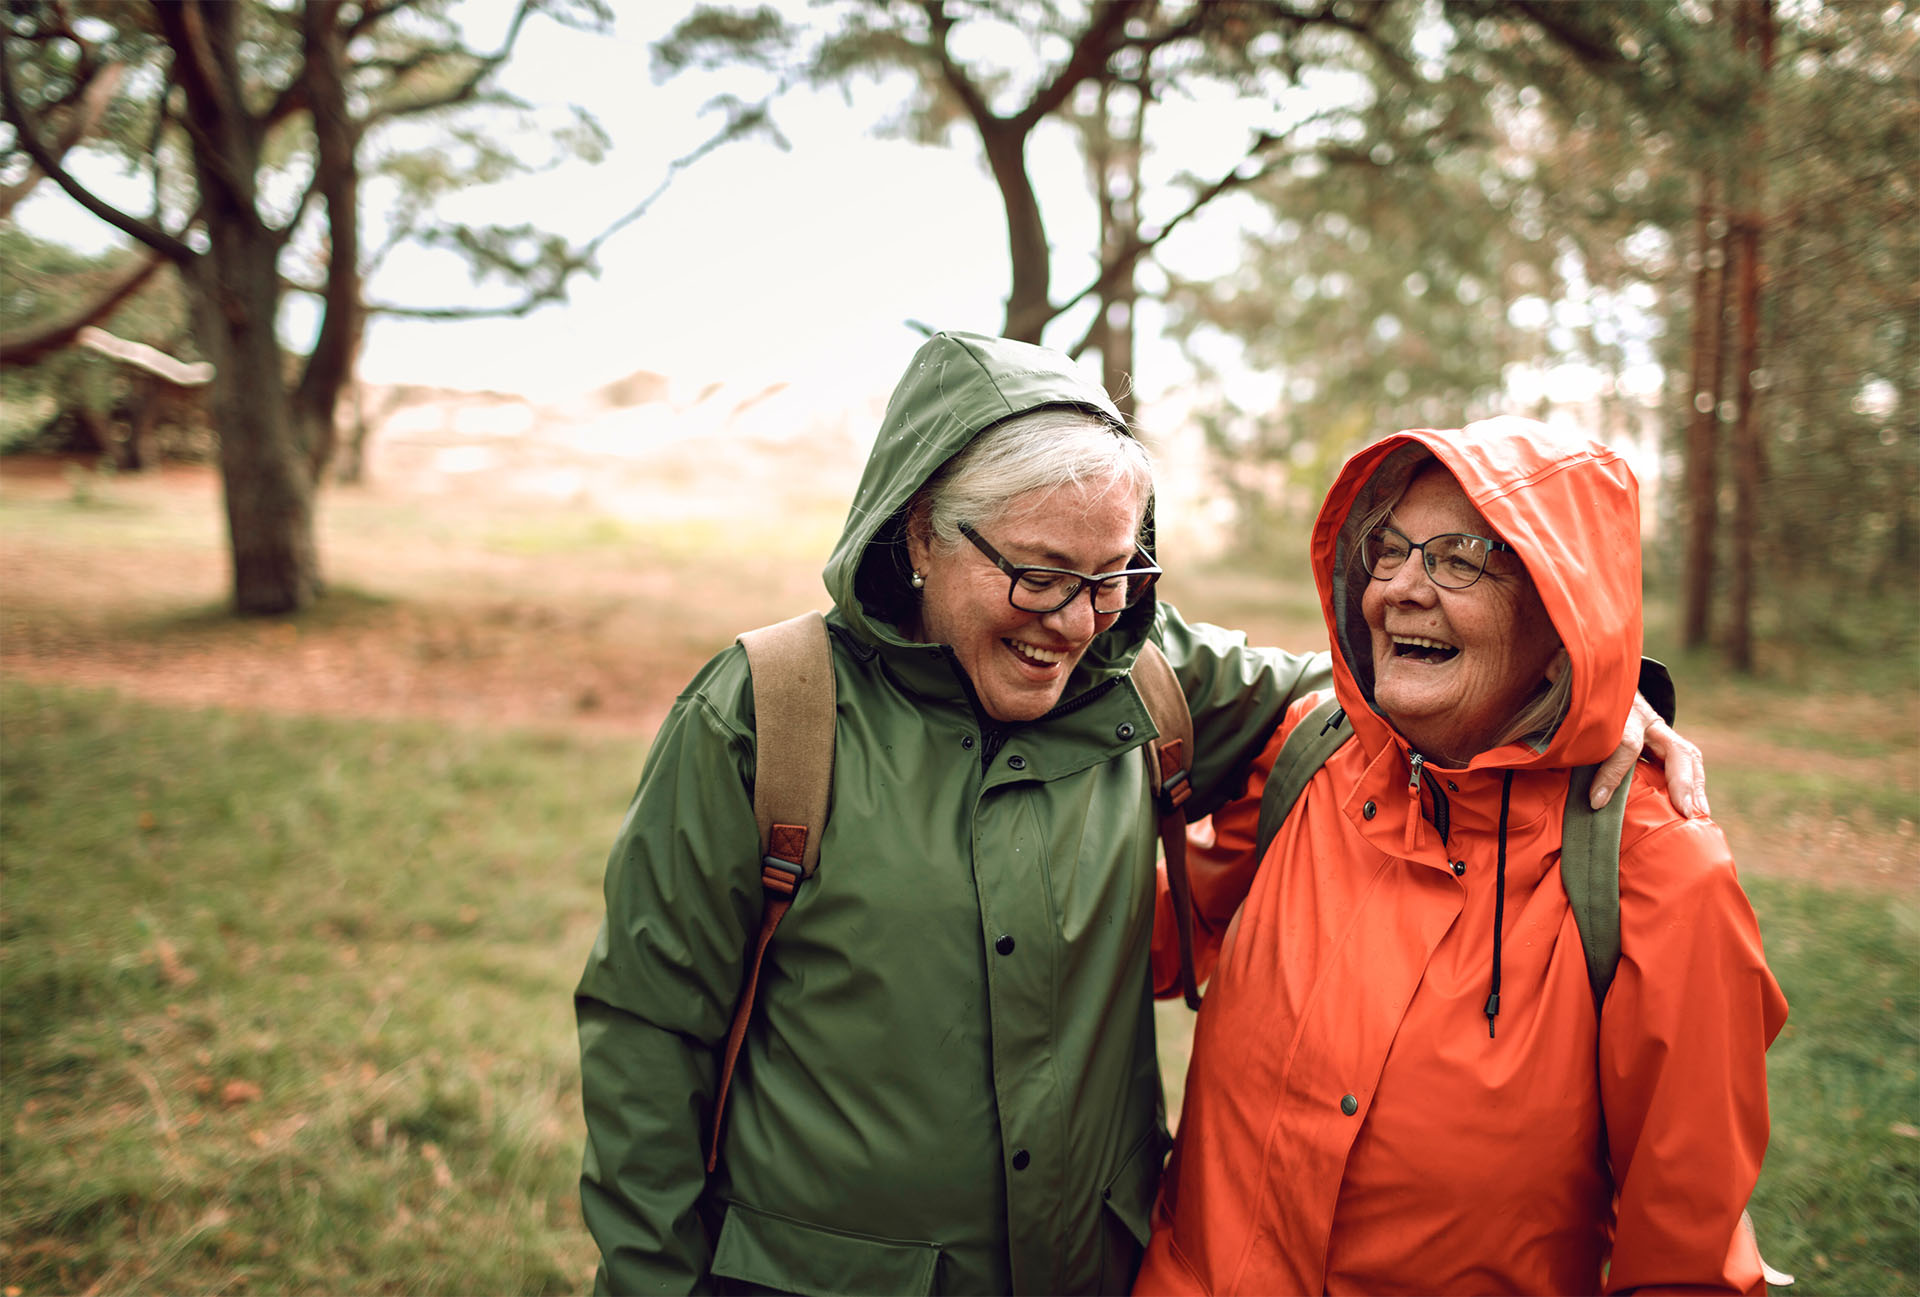 Kaksi ikääntynyttä naista pitää toisiaan olkapäistä kiinni nauraen. Heillä on sadetakit päällä syksyisessä metsämaisemassa.